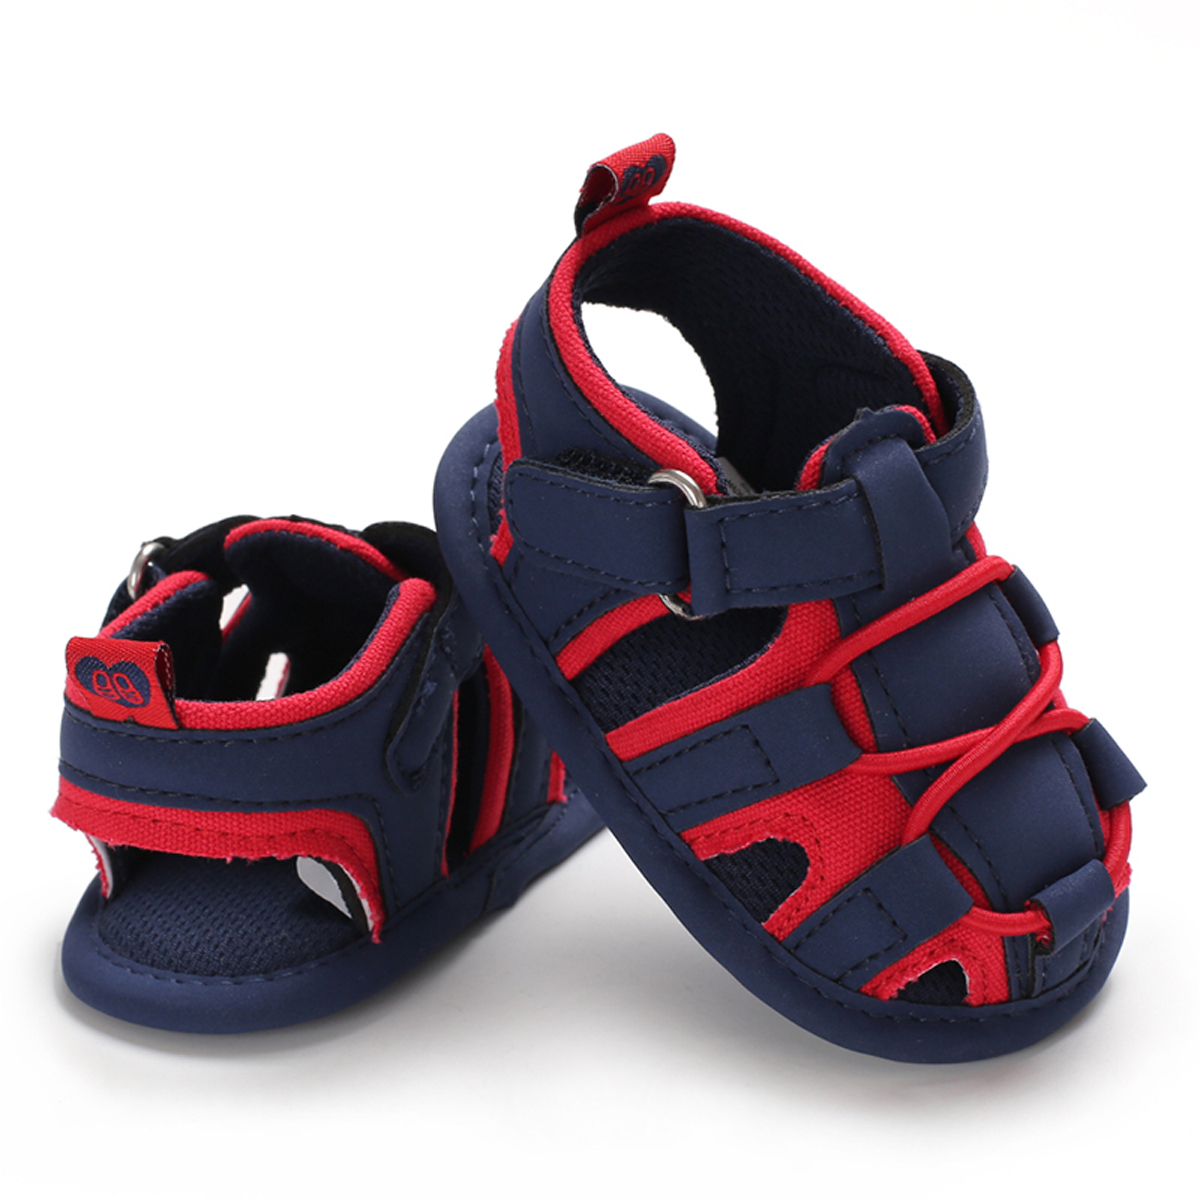 Mærke sommer toddler nyfødt baby dreng sandaler bløde vandresko patchwork hule prewalker sandaler 0-18m us: Rød / 0-6 måneder